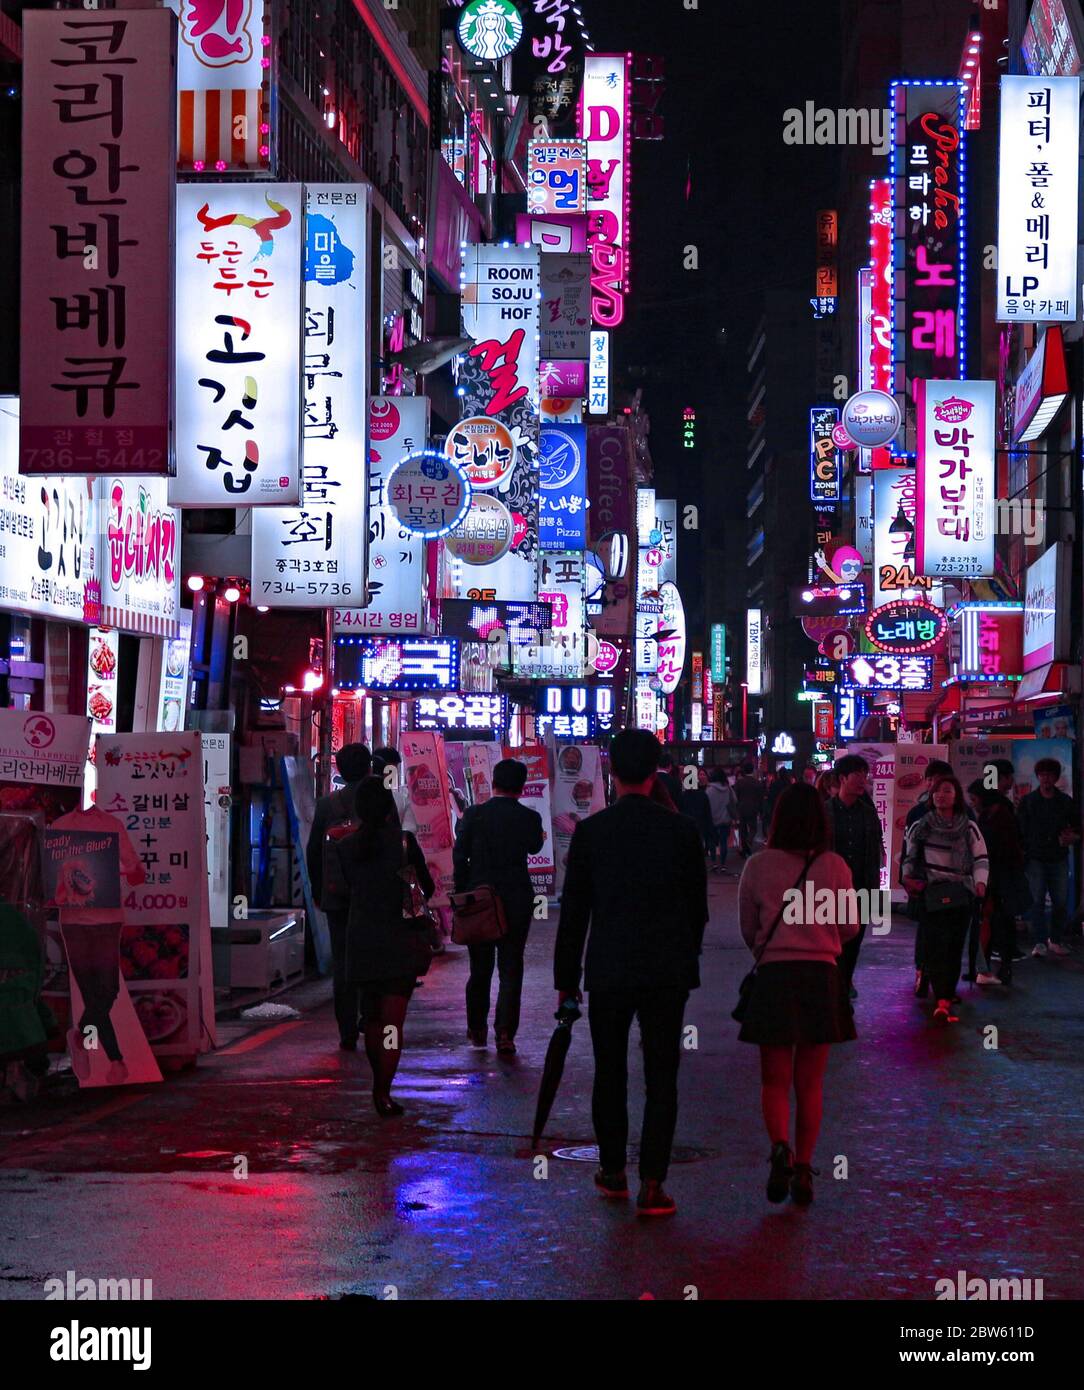 Una notte piovosa che cammina lungo una delle strade dello shopping con i segni del negozio al neon di Myeong dong, Seoul, Corea del Sud Foto Stock